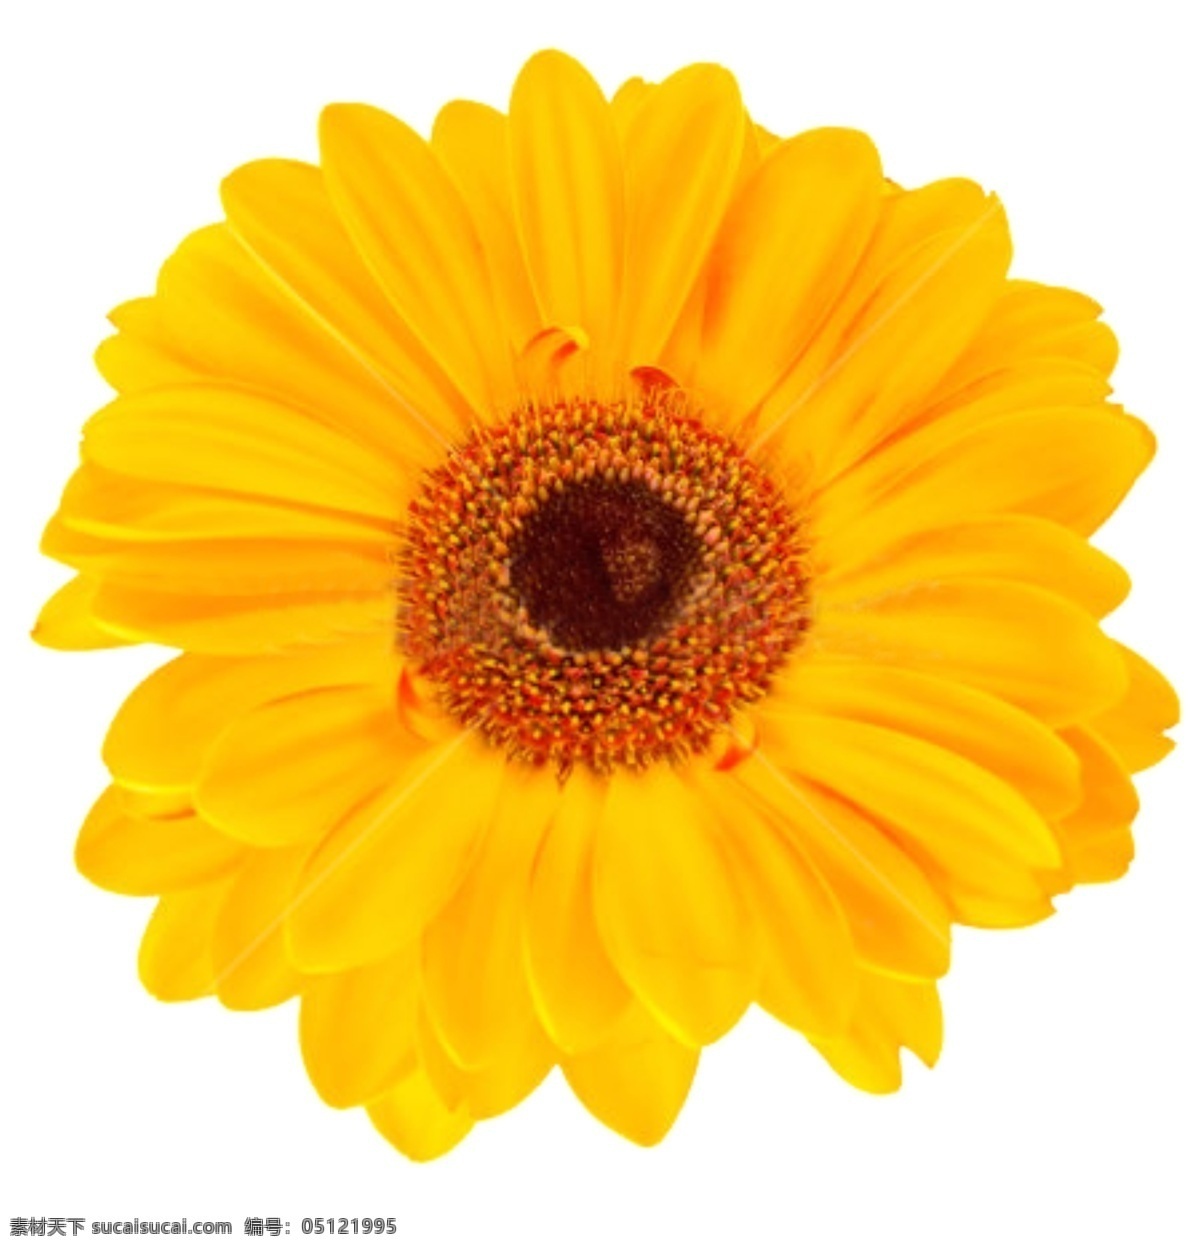 黄色菊花图片 七彩菊花 花朵 花瓣 鲜花 鲜花素材 鲜花植物 文化艺术